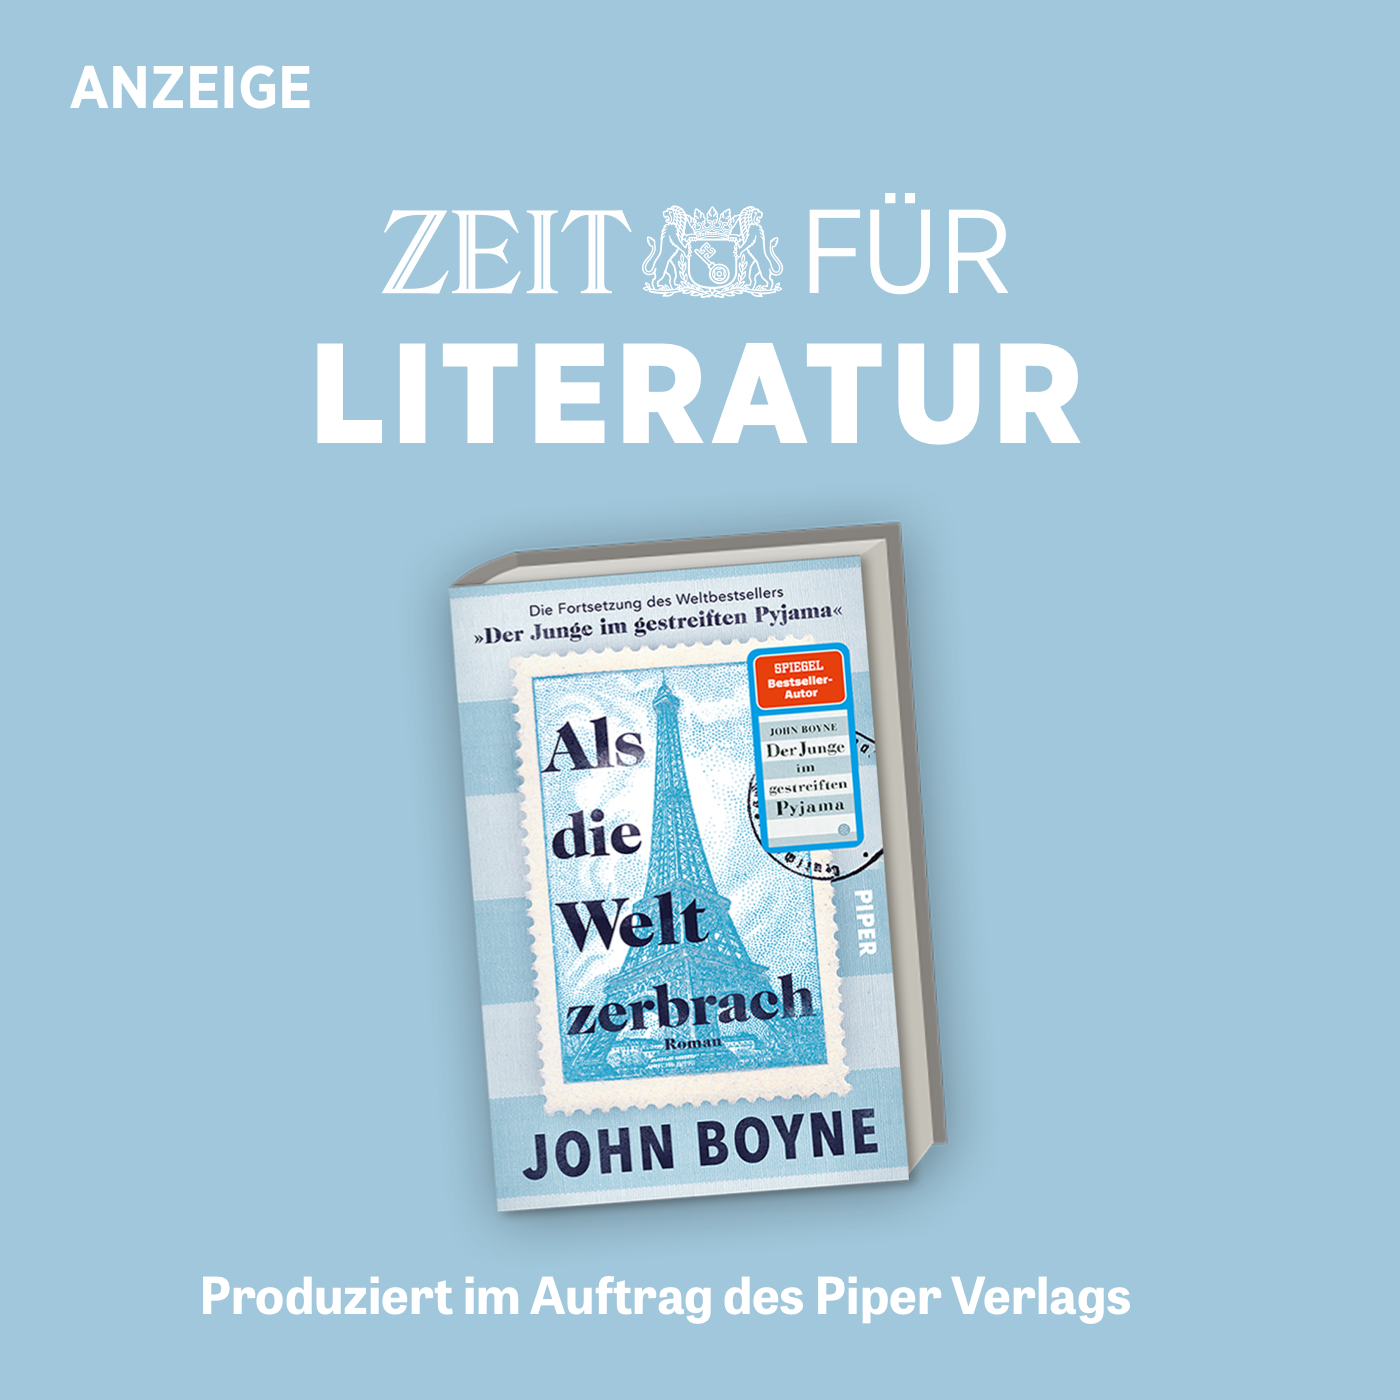 ZEIT für Literatur mit John Boyne